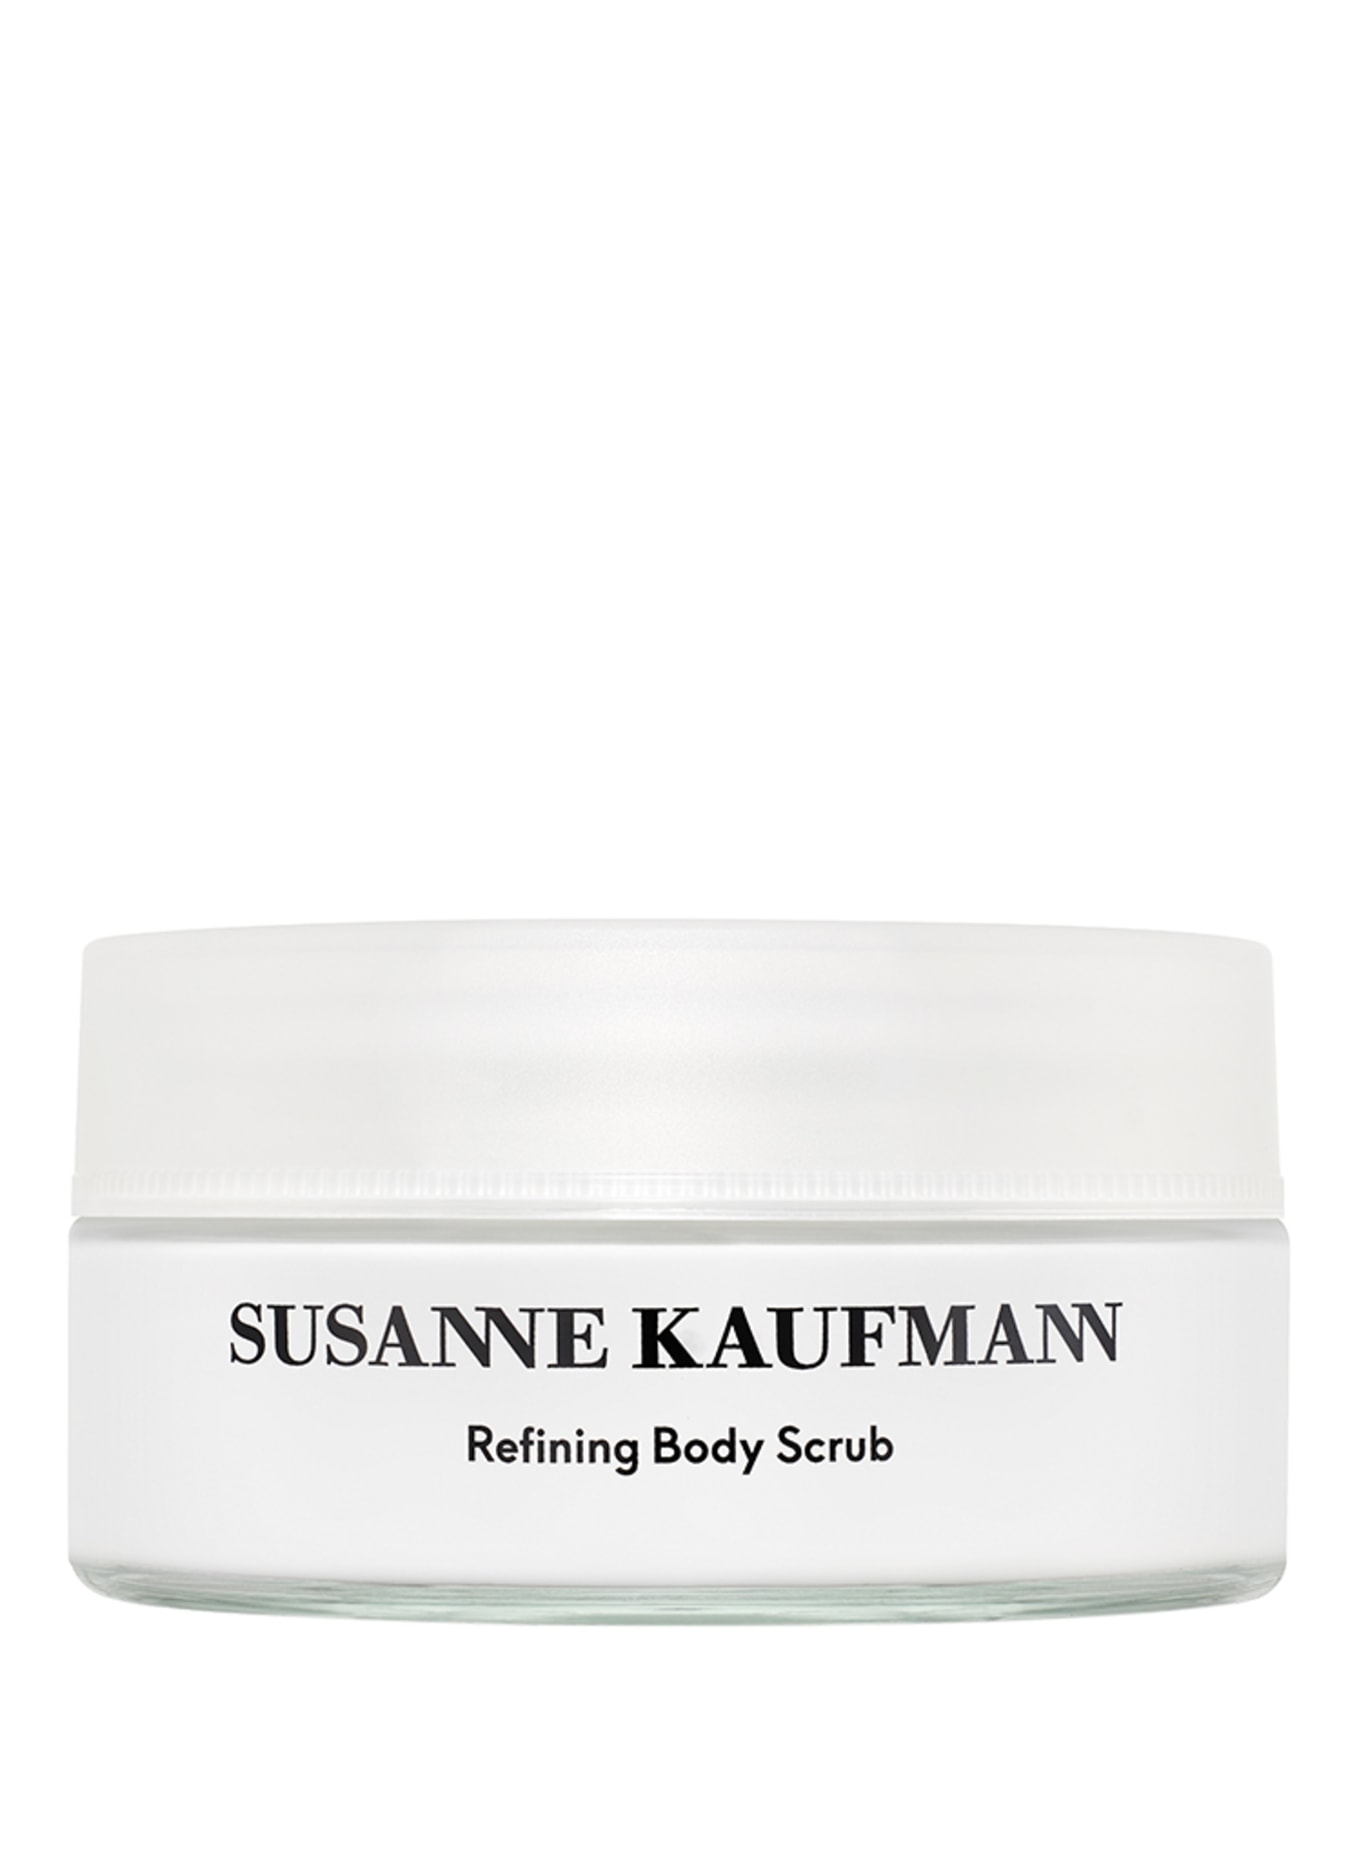 SUSANNE KAUFMANN REFINING BODY SCRUB (Obrazek 1)